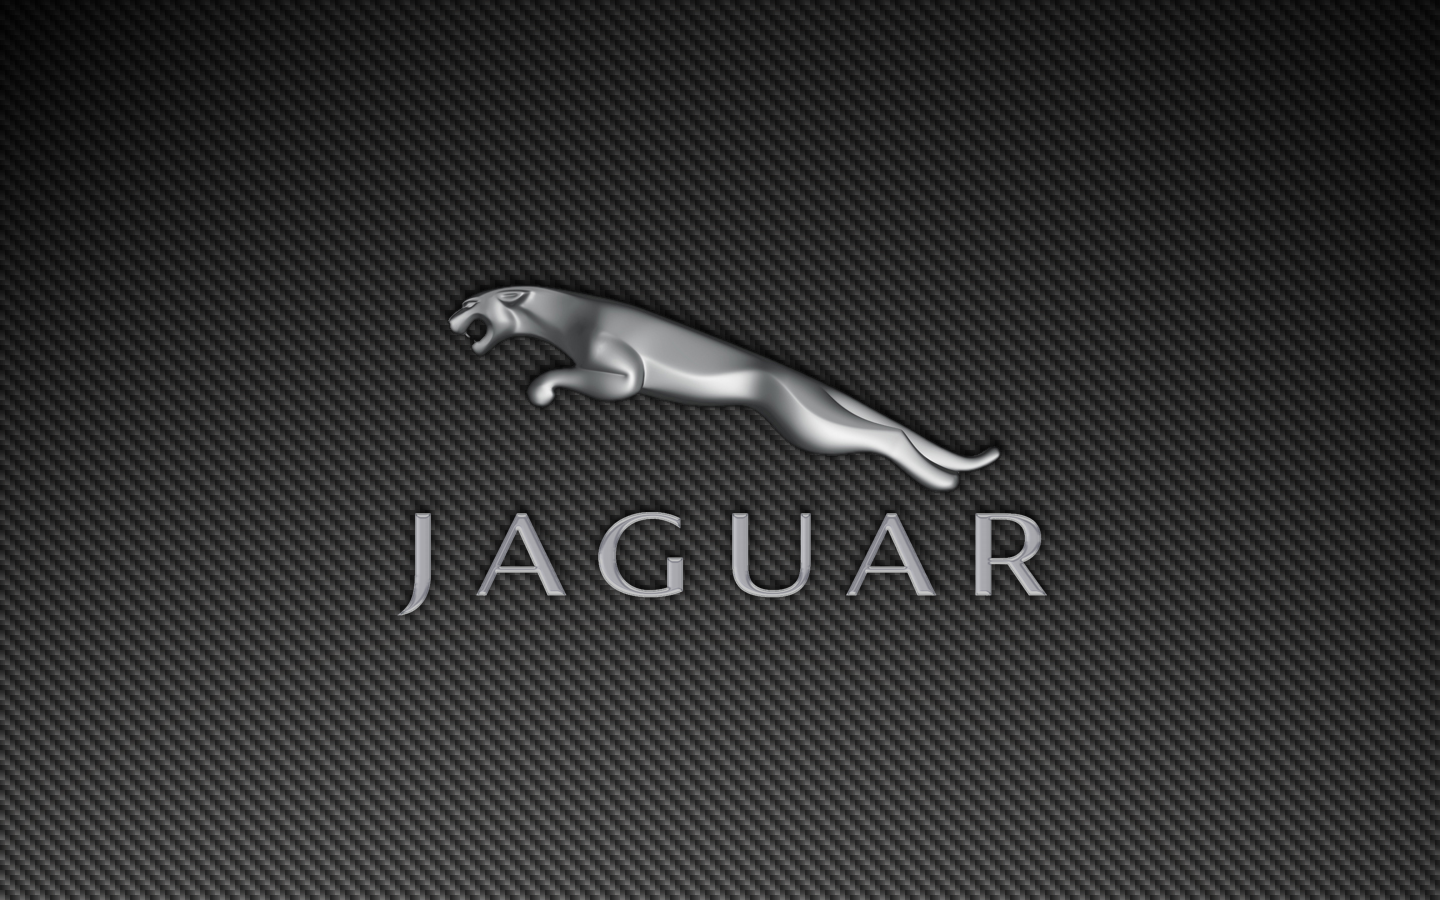 jaguar-leaper-logo-carbon-fiber-1440x900.png